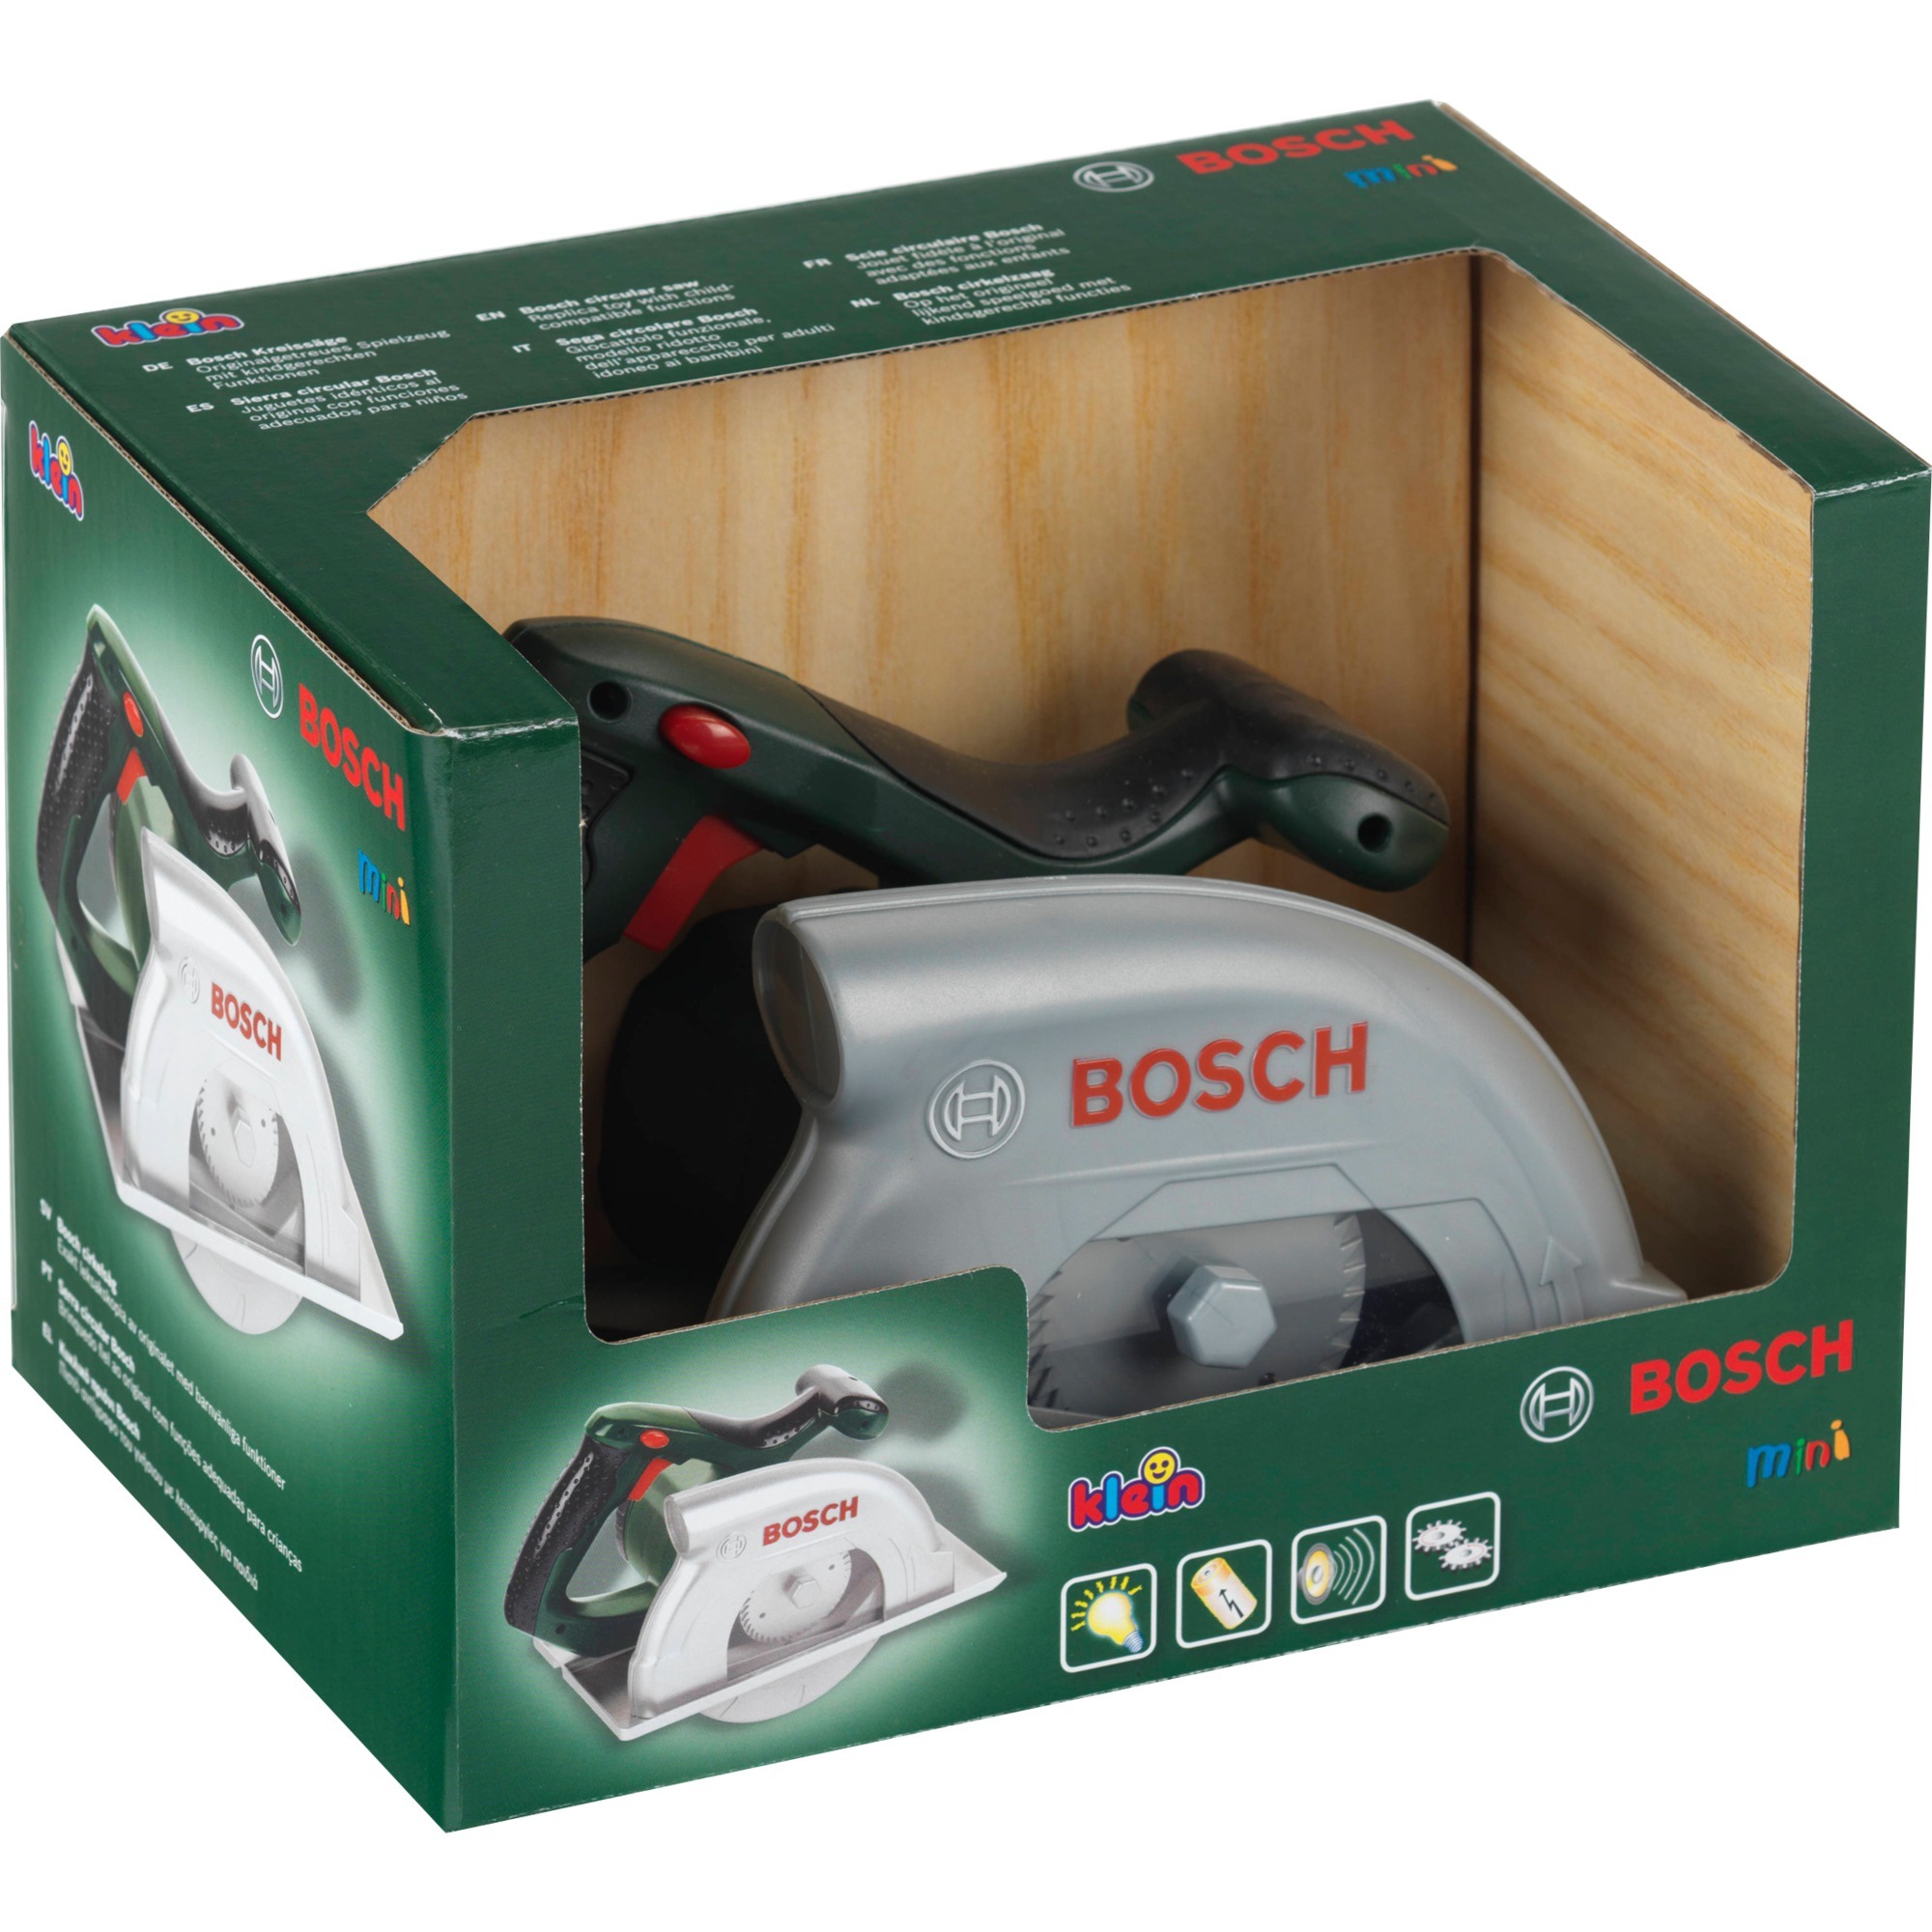 Image of Alternate - Bosch Kreissäge, Kinderwerkzeug online einkaufen bei Alternate